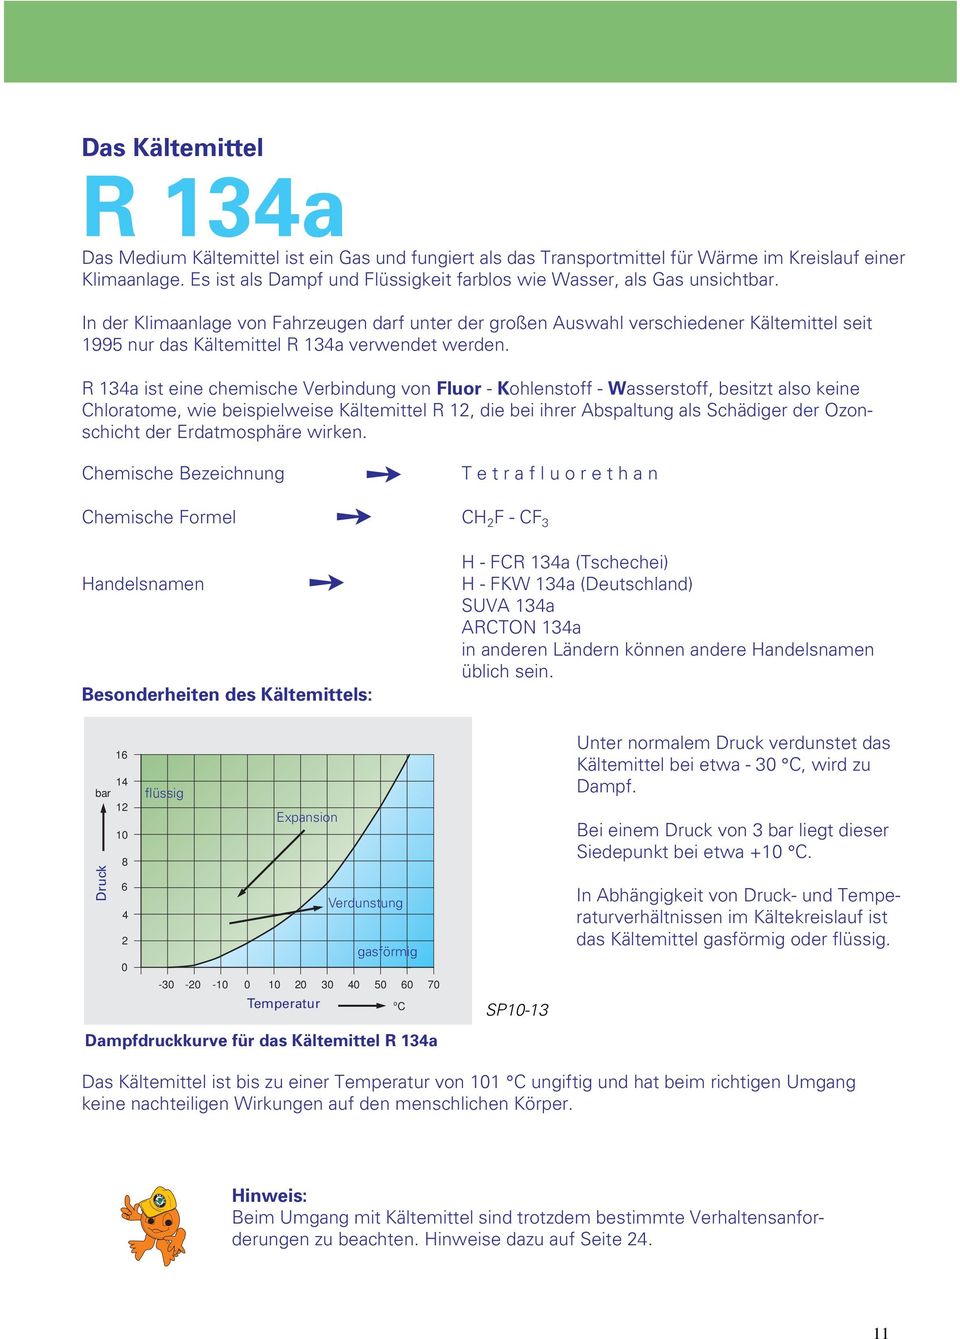 In der Klimaanlage von Fahrzeugen darf unter der großen Auswahl verschiedener Kältemittel seit 1995 nur das Kältemittel R 134a verwendet werden.